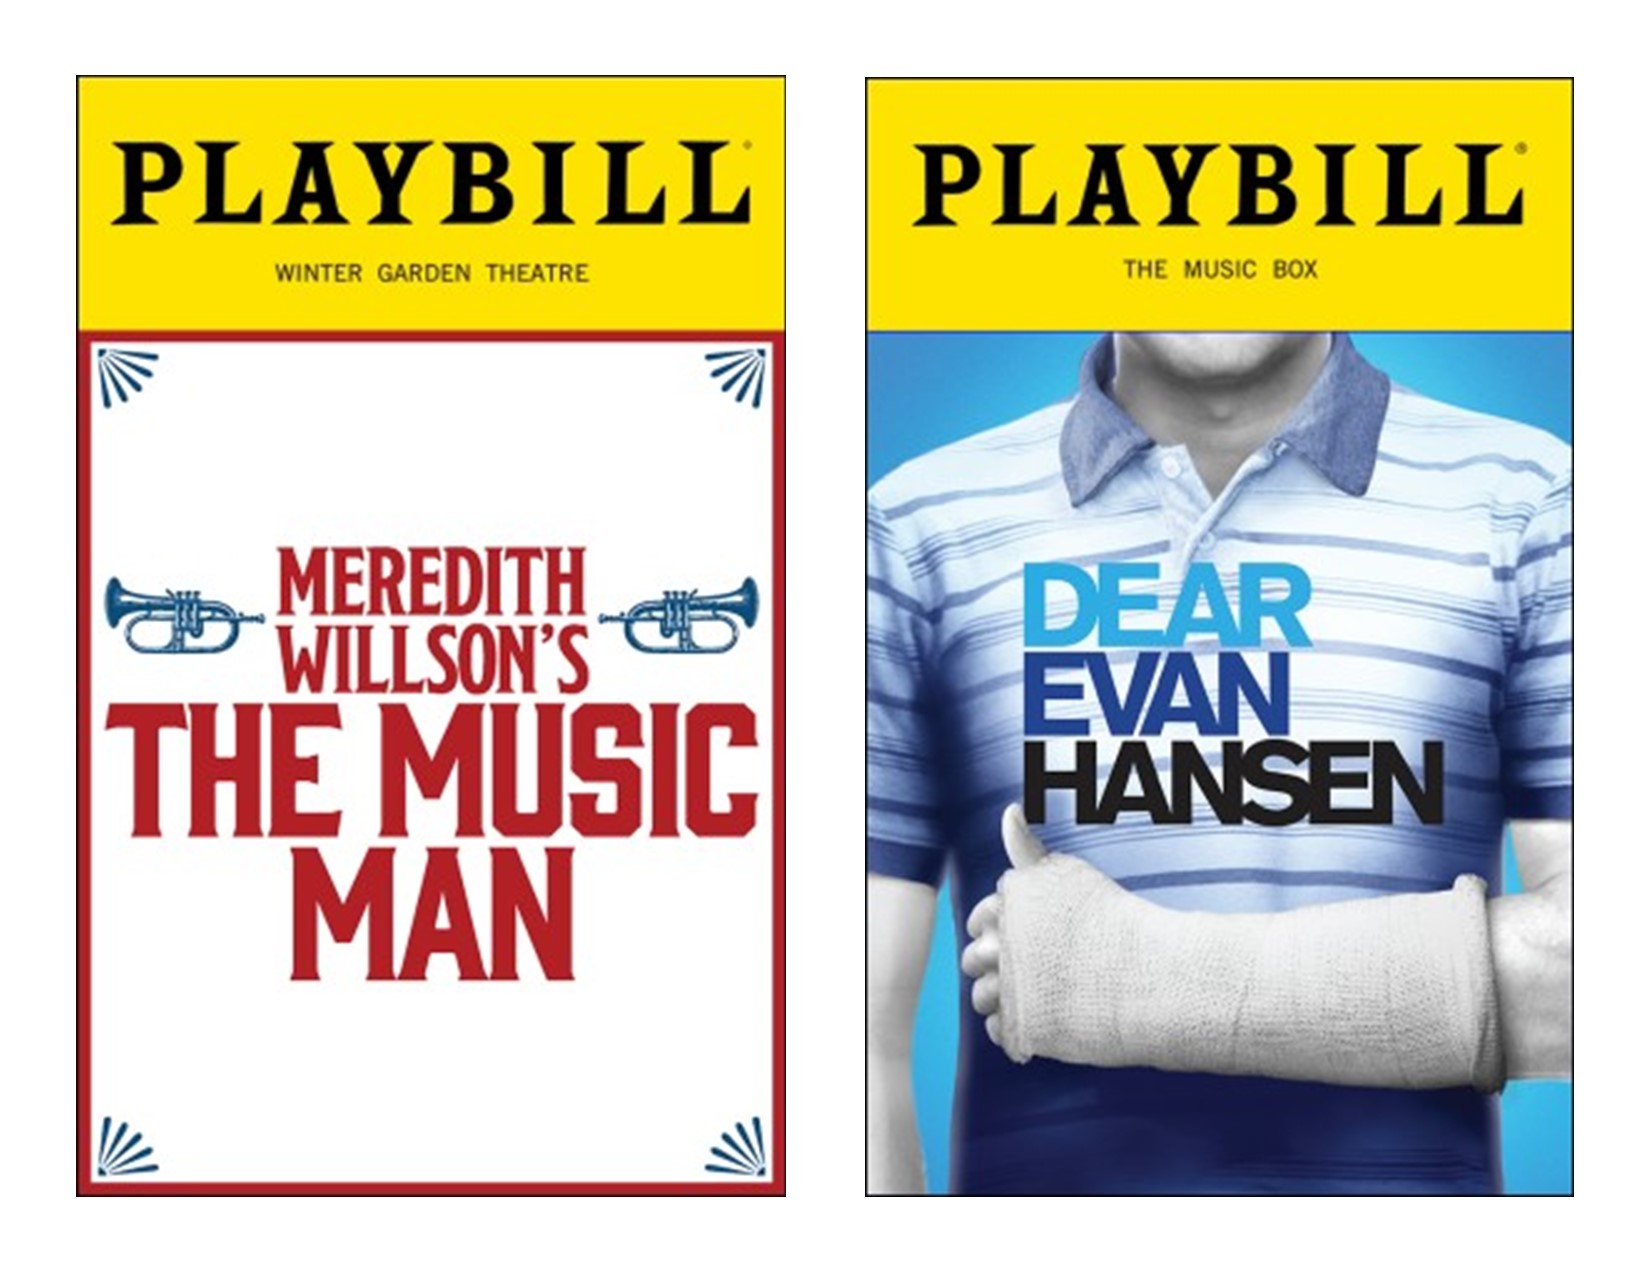 Broadway Shows: Music Man or Dear Evan Hansen